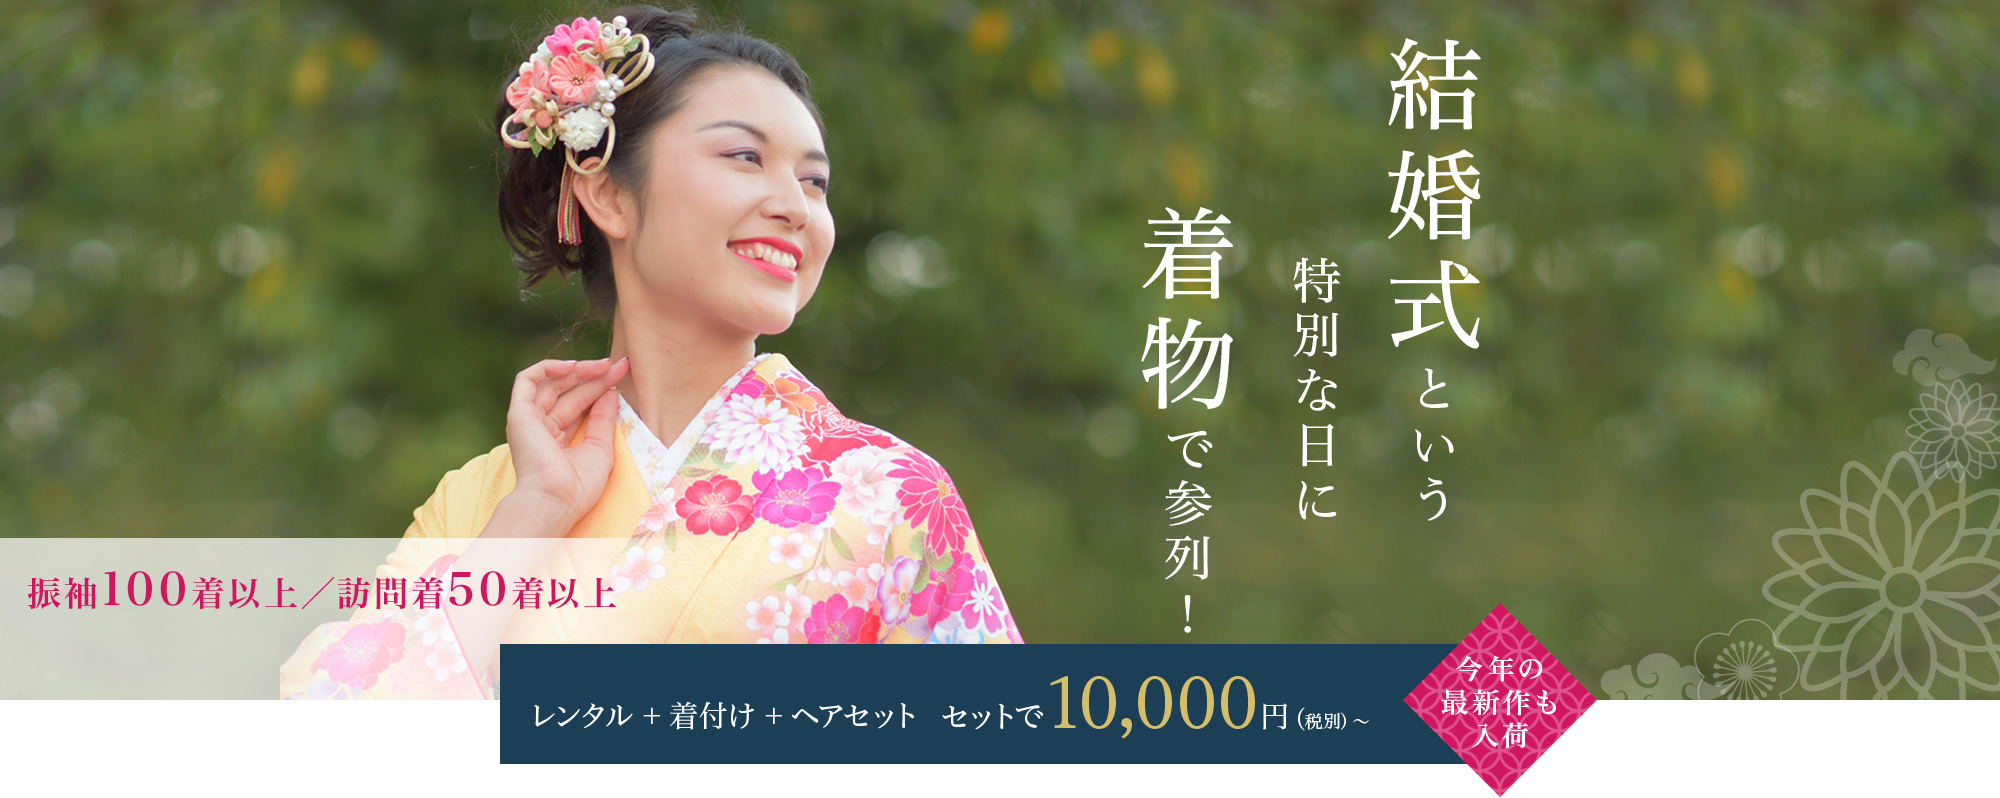 東京 浅草結婚式の訪問着 振袖レンタルの格安プラン10 000円